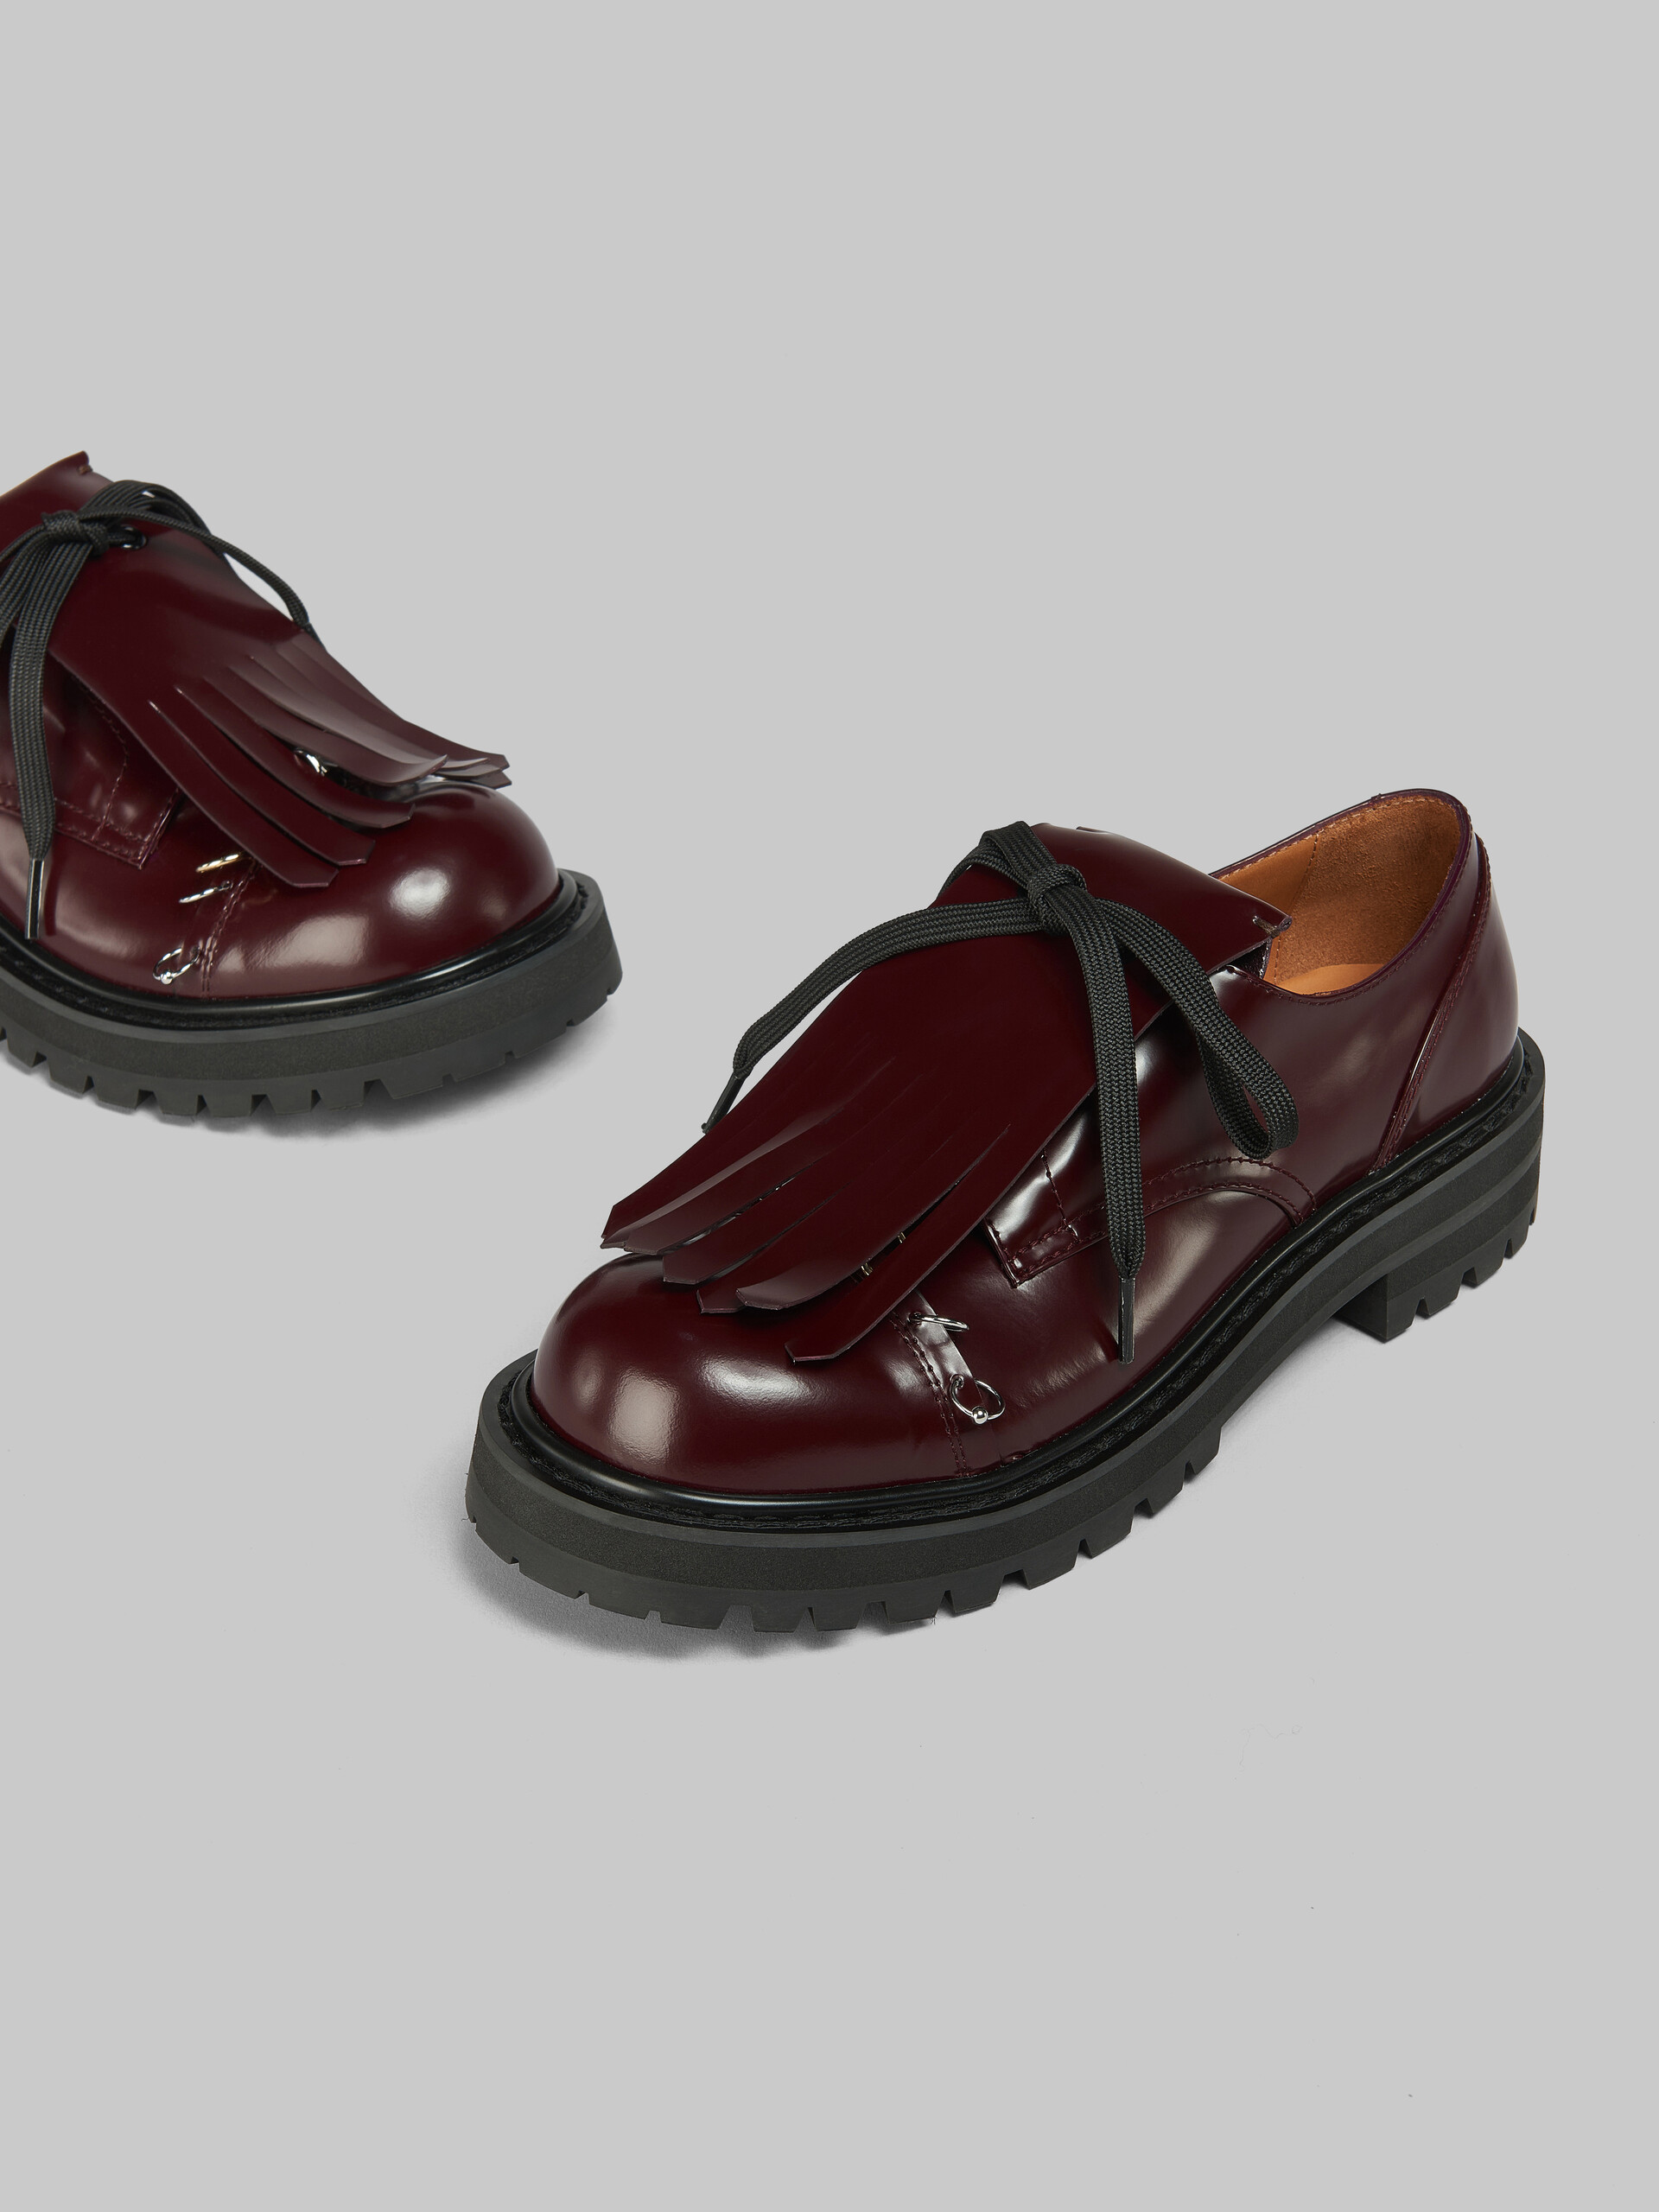 Chaussures derby Dada en cuir noir avec frange oversize - Chaussures à Lacets - Image 5